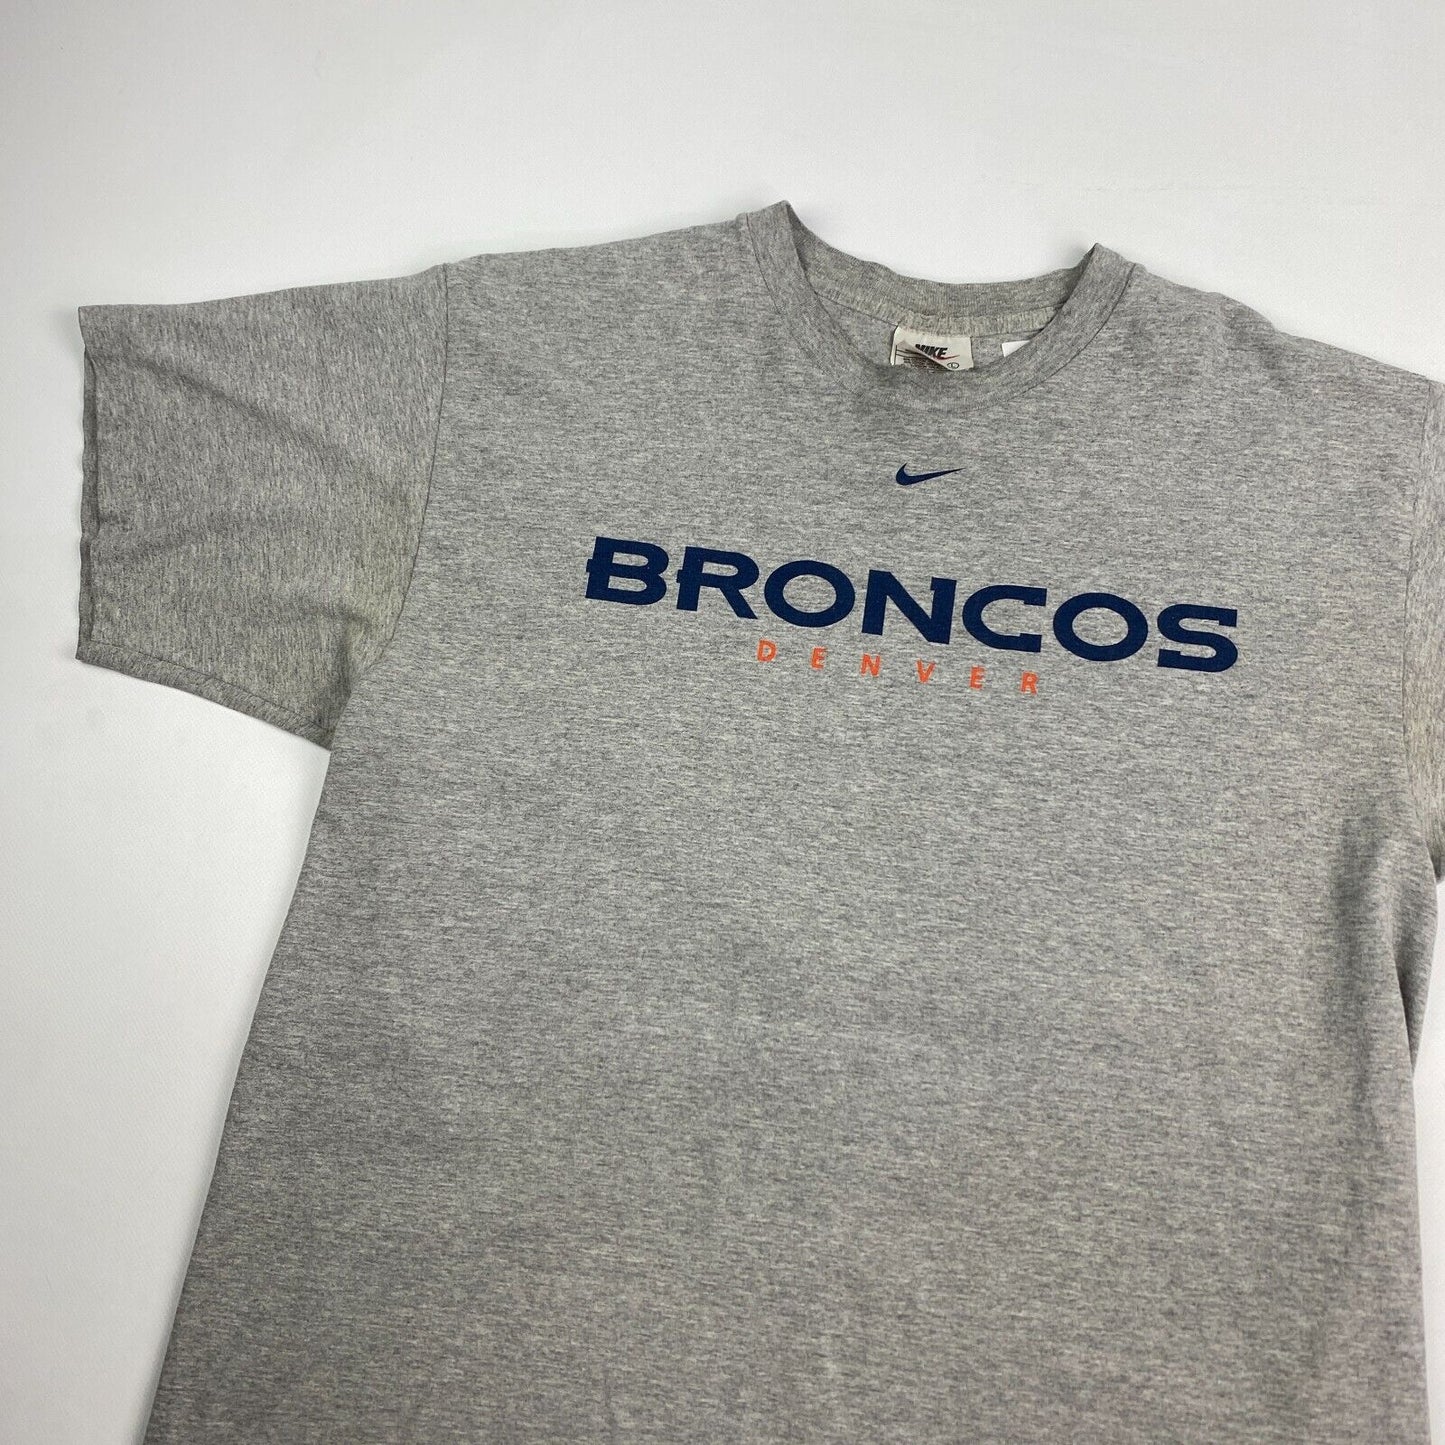 VINTAGE 90s NIKE Mid Swoosh Denver Broncos Grey T-Shirt sz Large Men